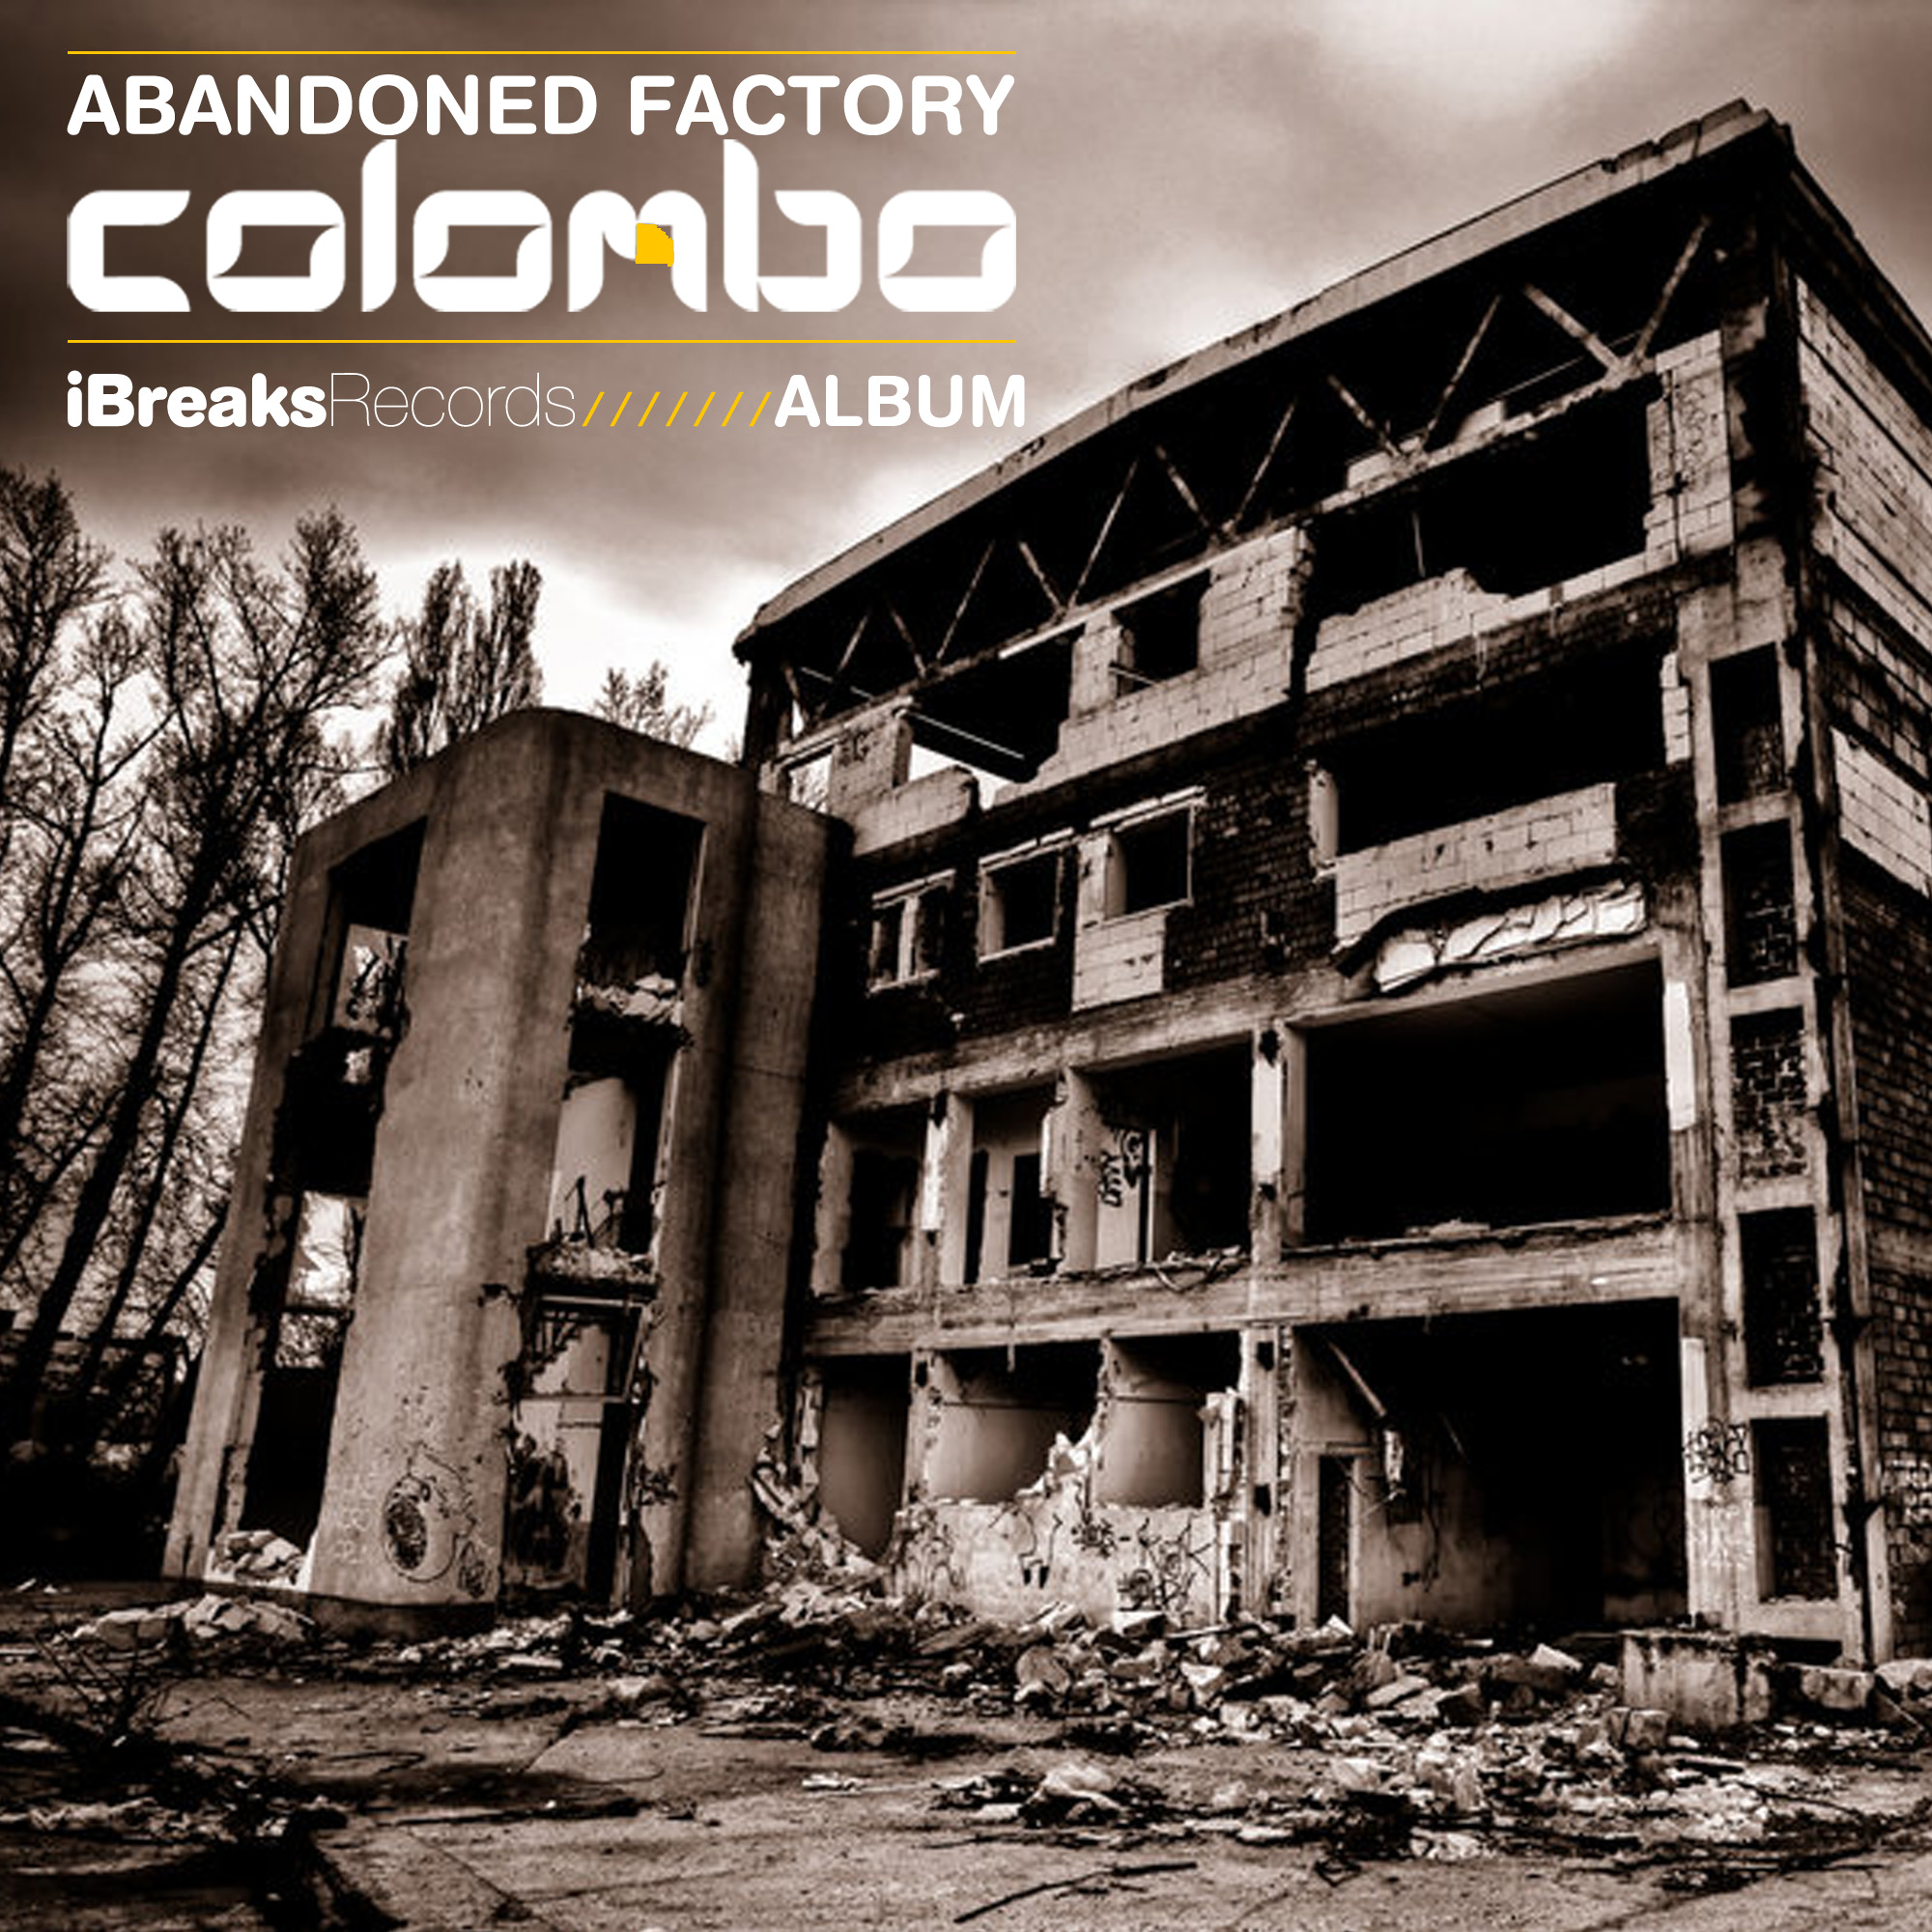 Download Colombo : Gods ("Album") (iBreaks) Release Date 01/11/12